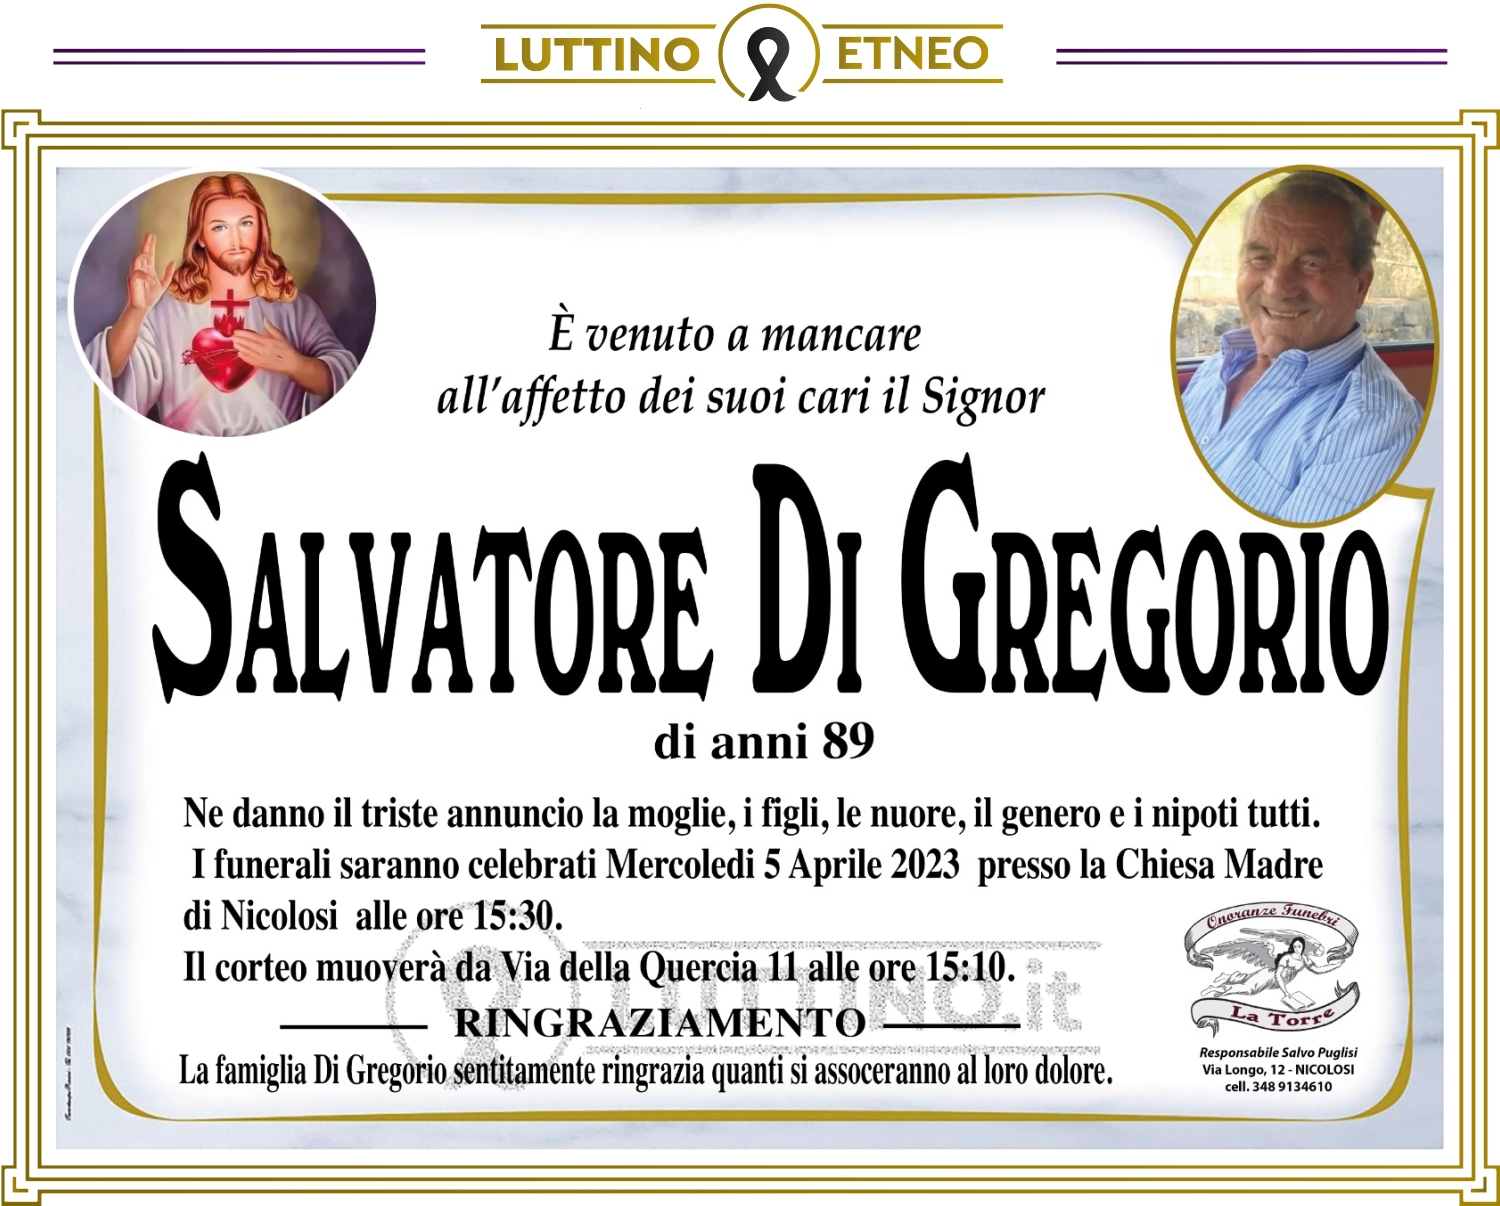 Salvatore Di Gregorio